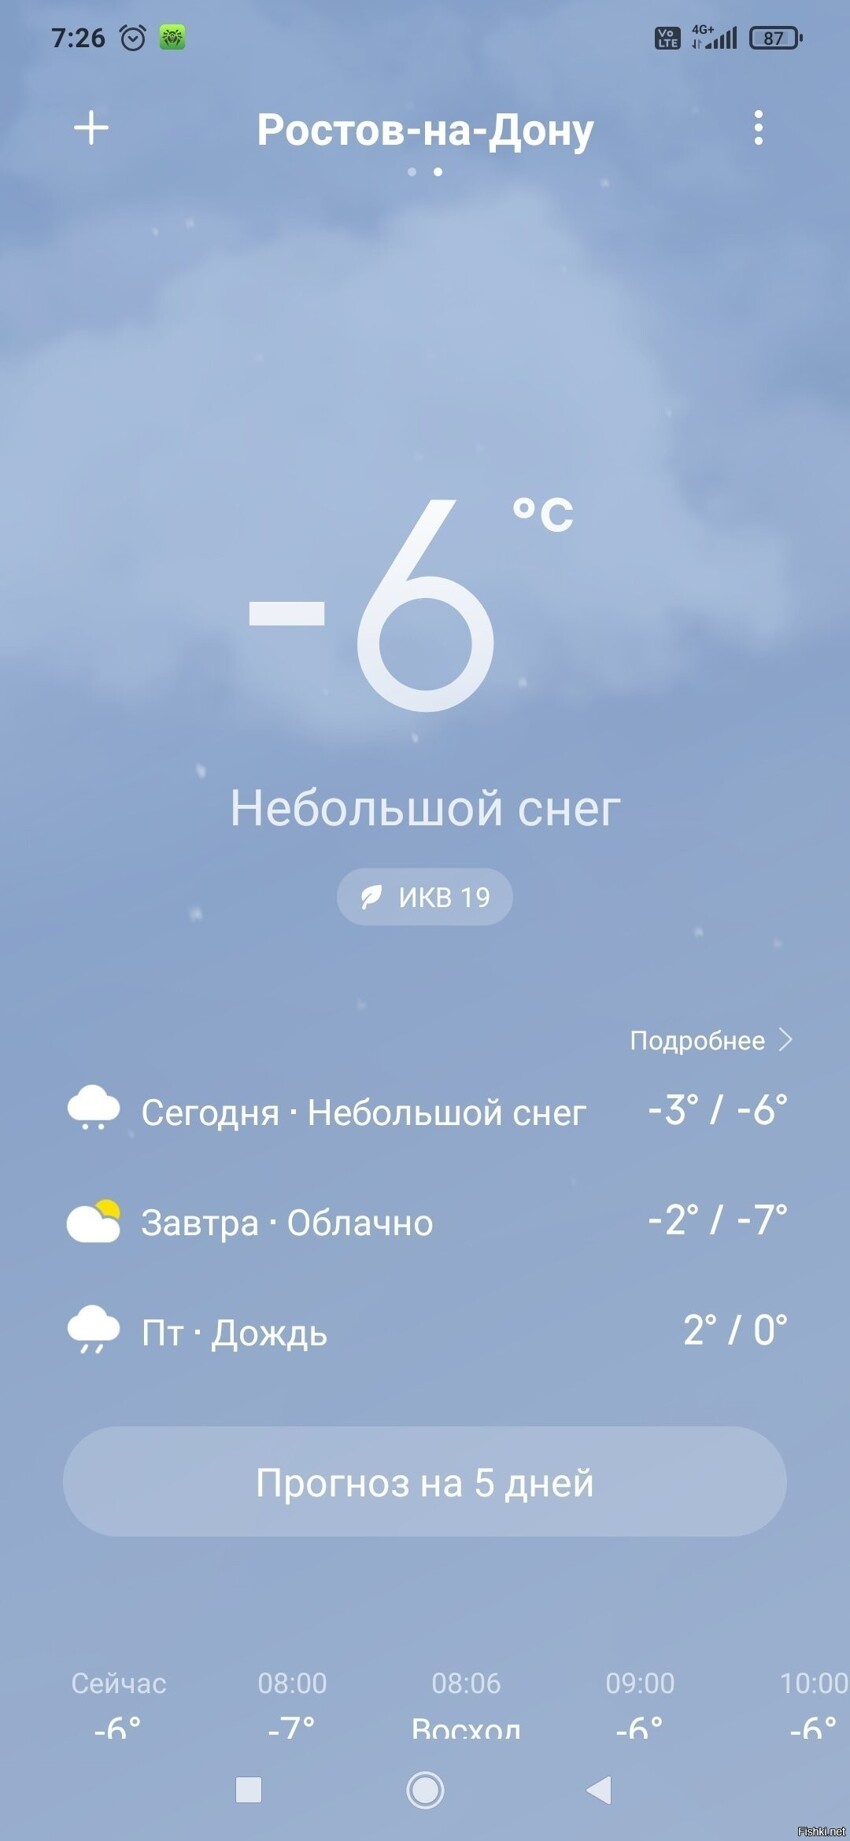 Все что над знать о ростовской зиме